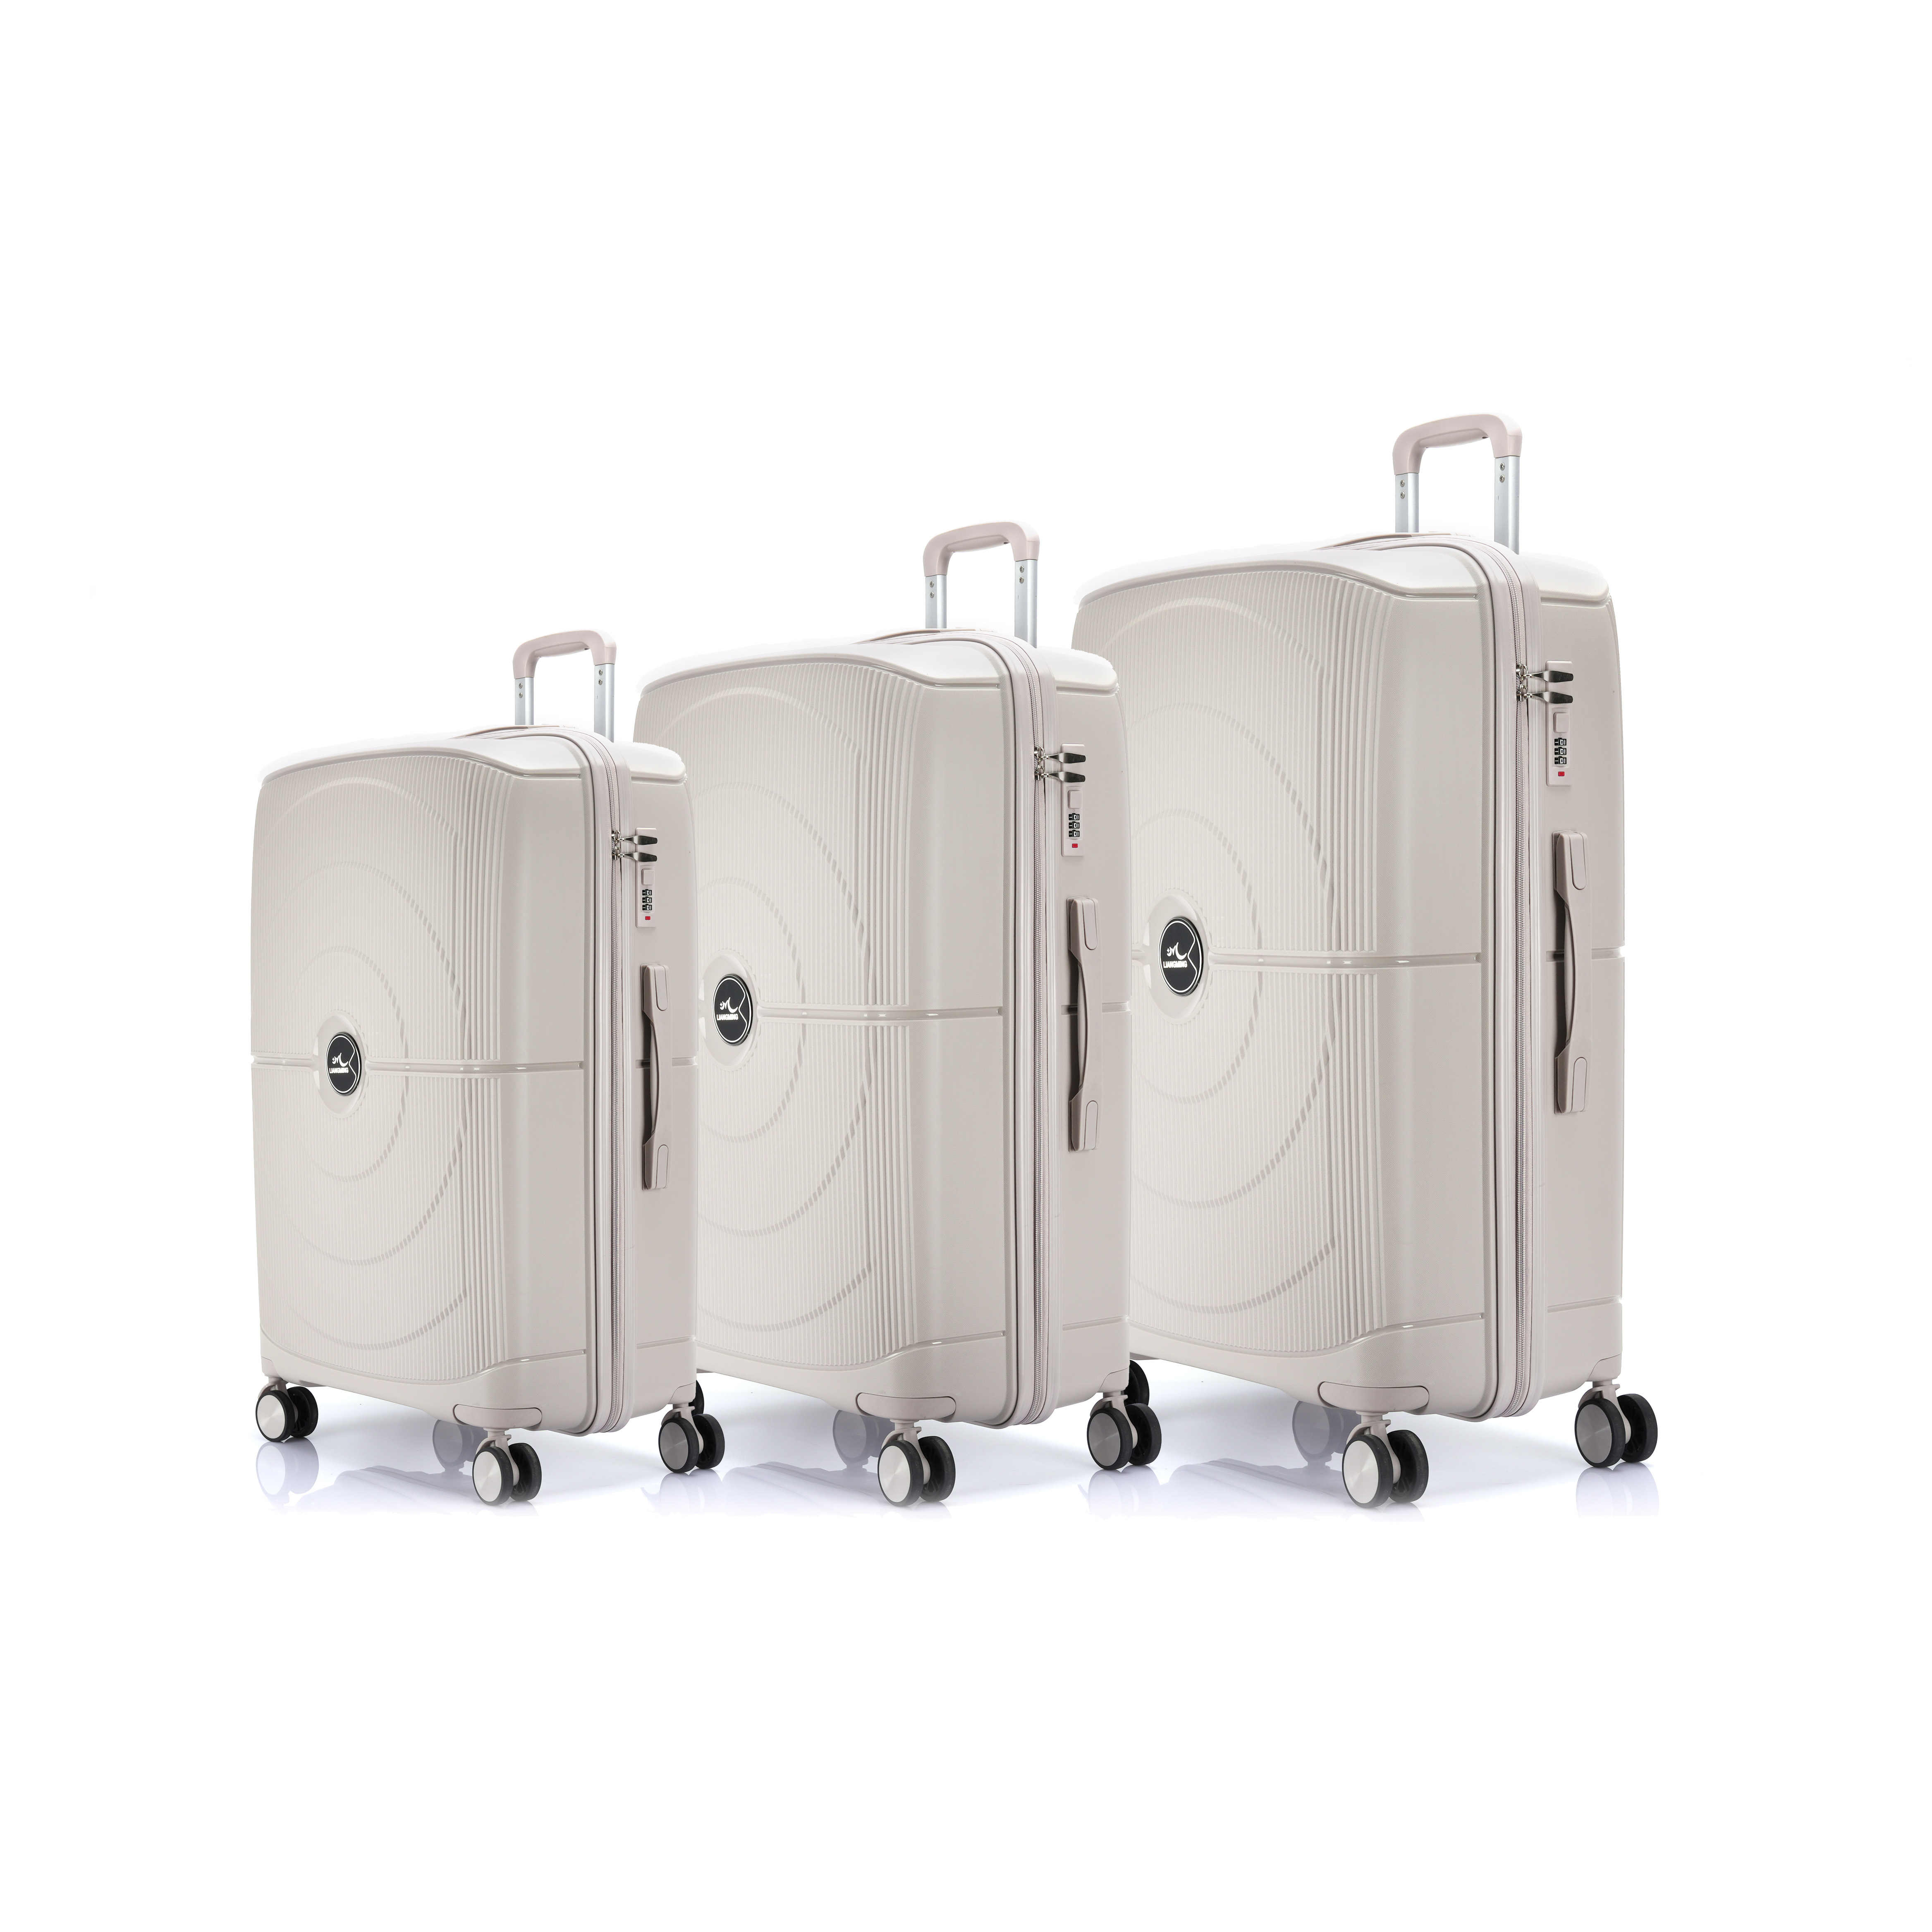 Jaká velikost zavazadla je pro vás nejlepší?